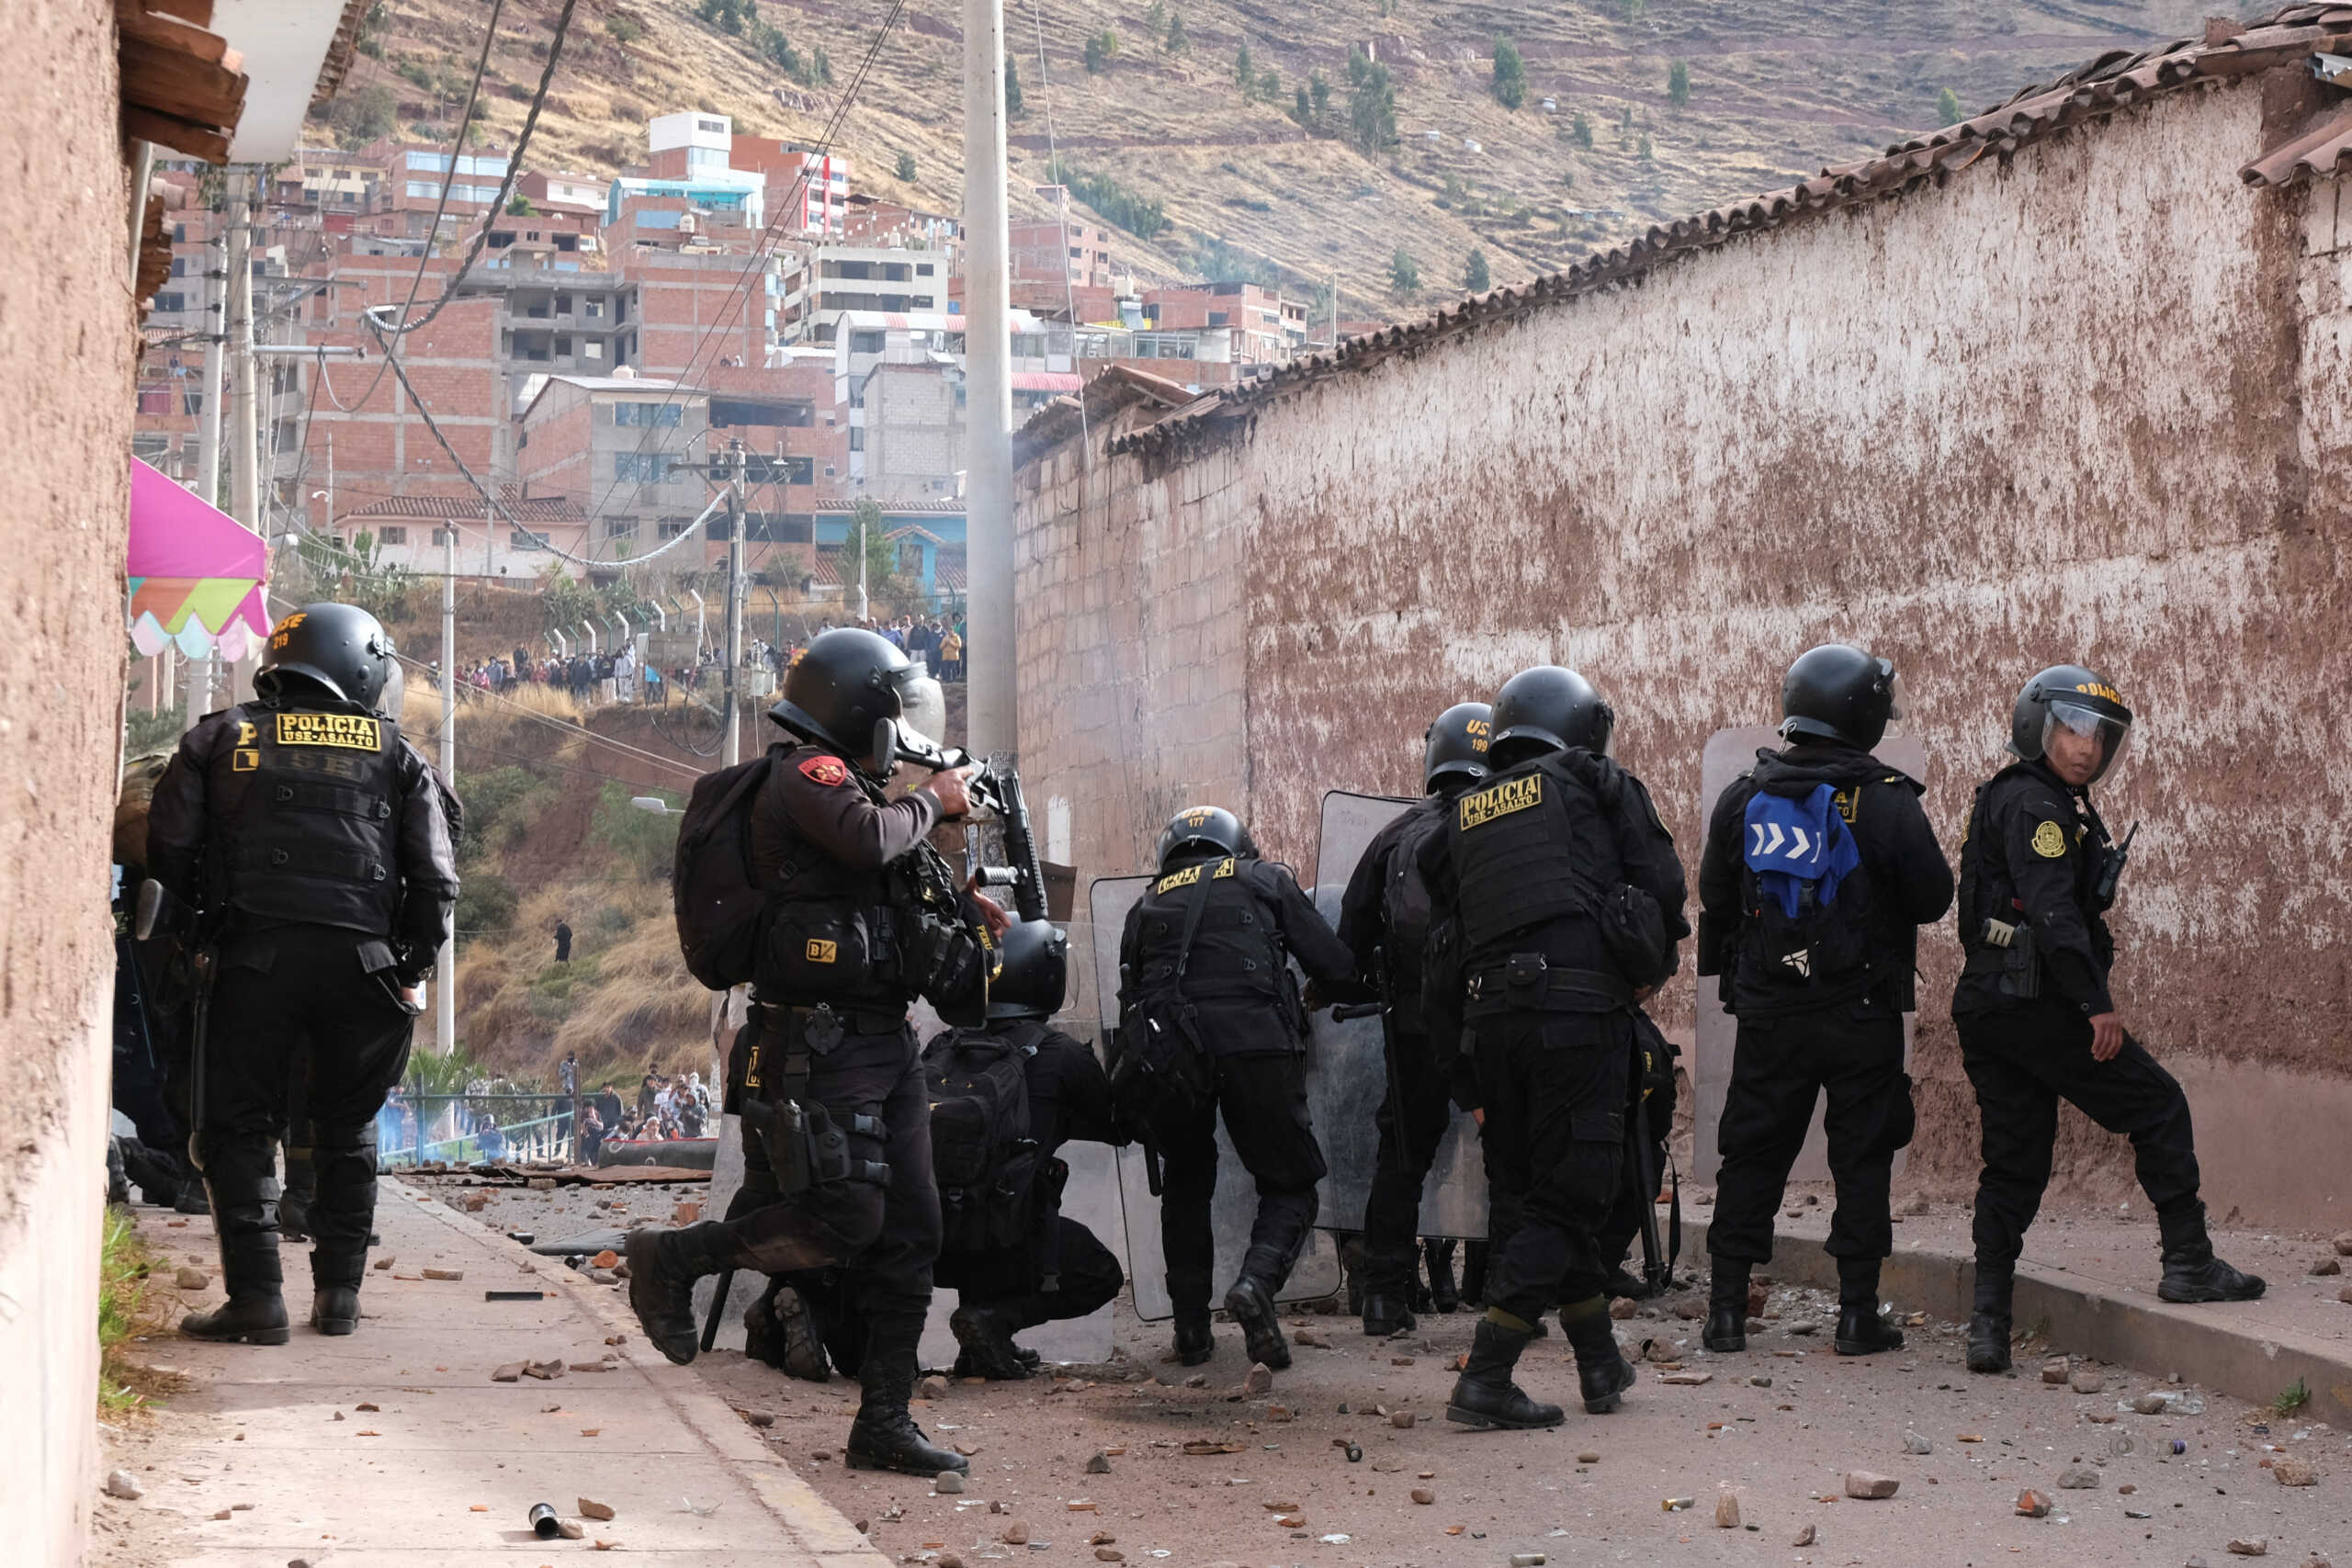 Περού: Ένοπλοι άνοιξαν πυρ σε χρυσωρυχείο – Νεκροί εννέα εργάτες